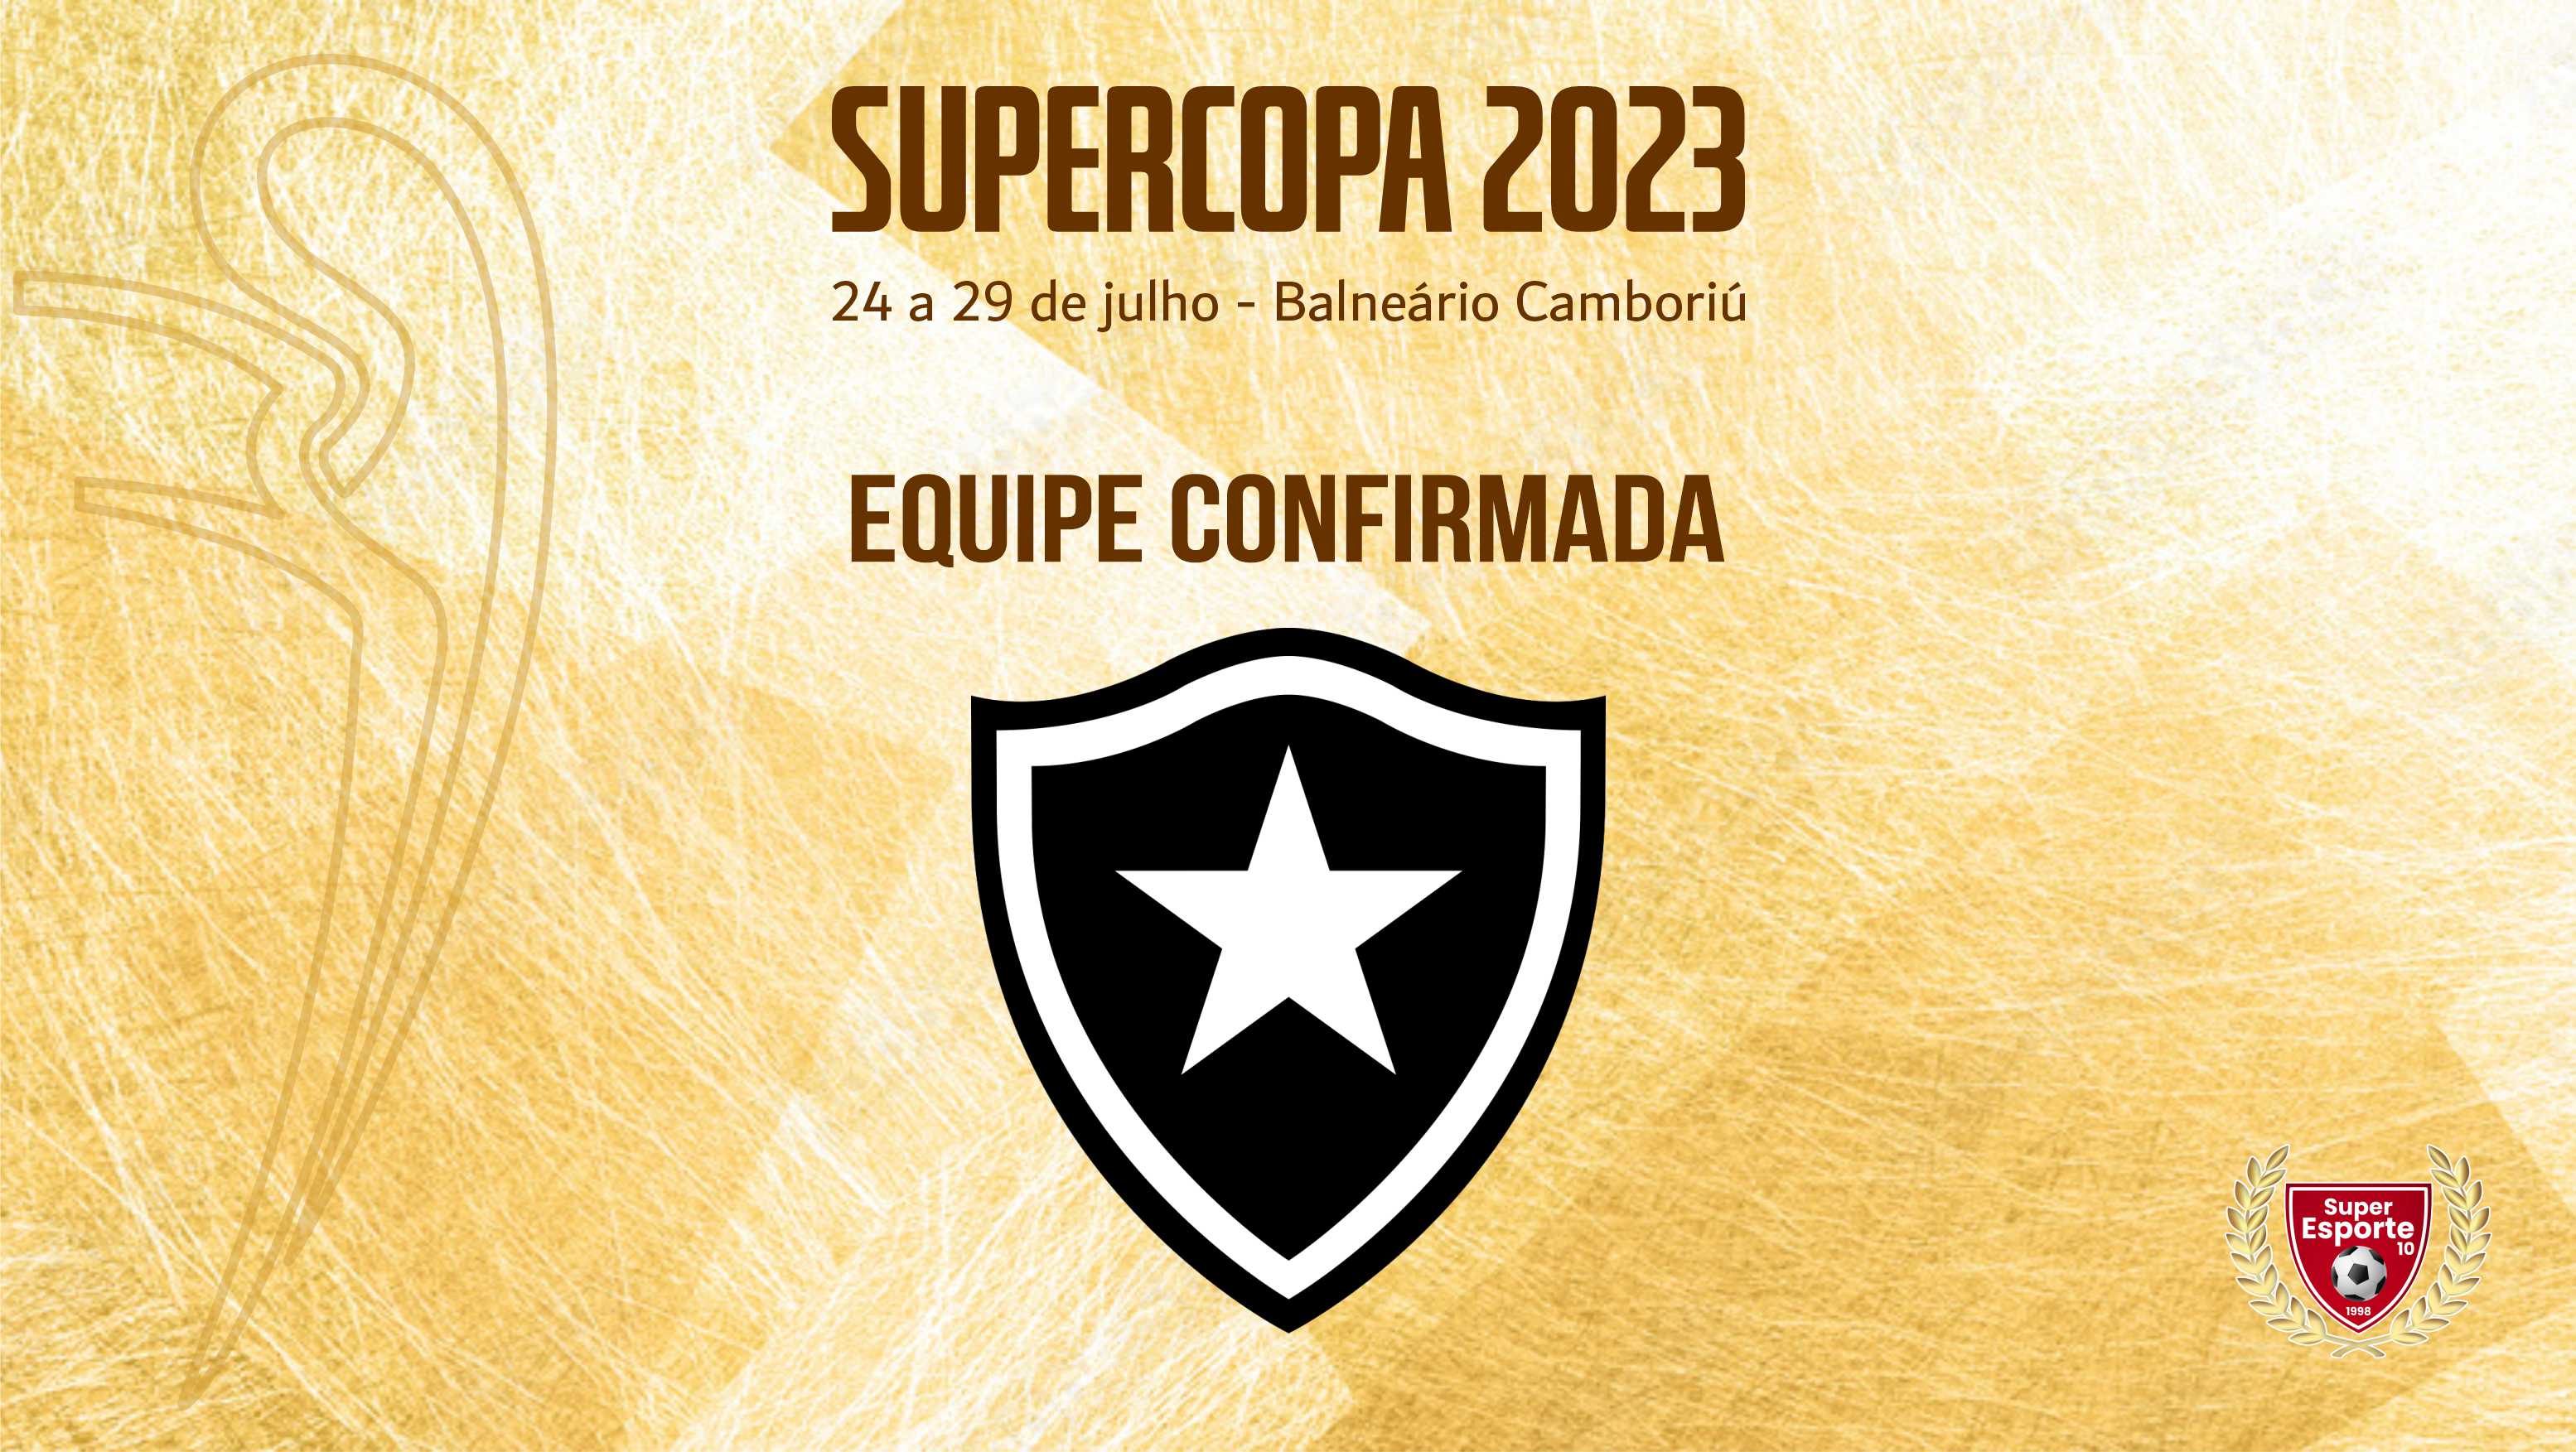 Botafogo confirma 8 categorias na Supercopa, em julho